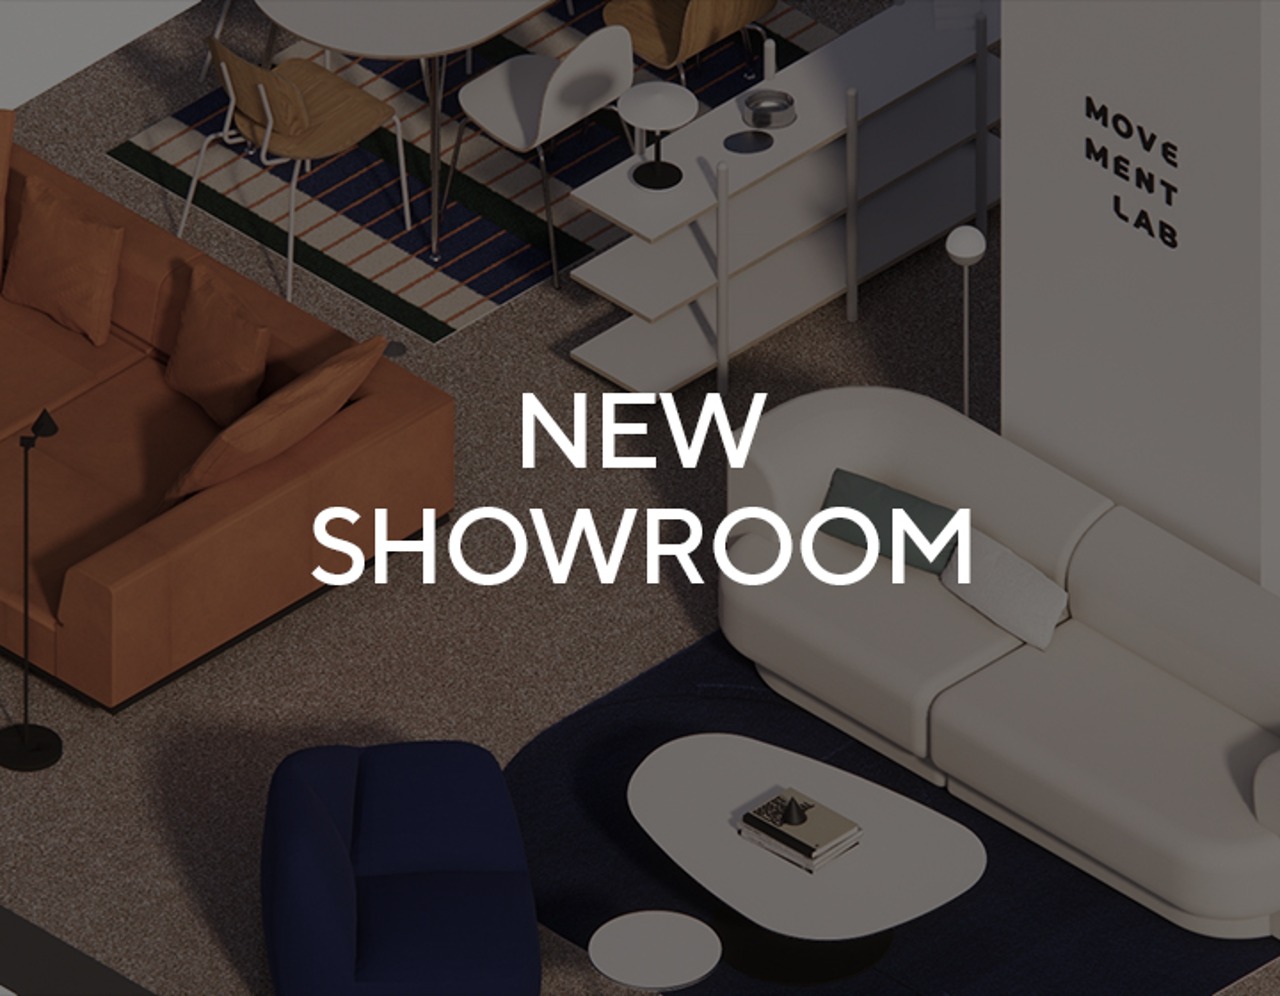 팝업 스토어 - 무브먼트랩 NEW SHOWROOM : 신세계백화점 센텀시티점 오픈